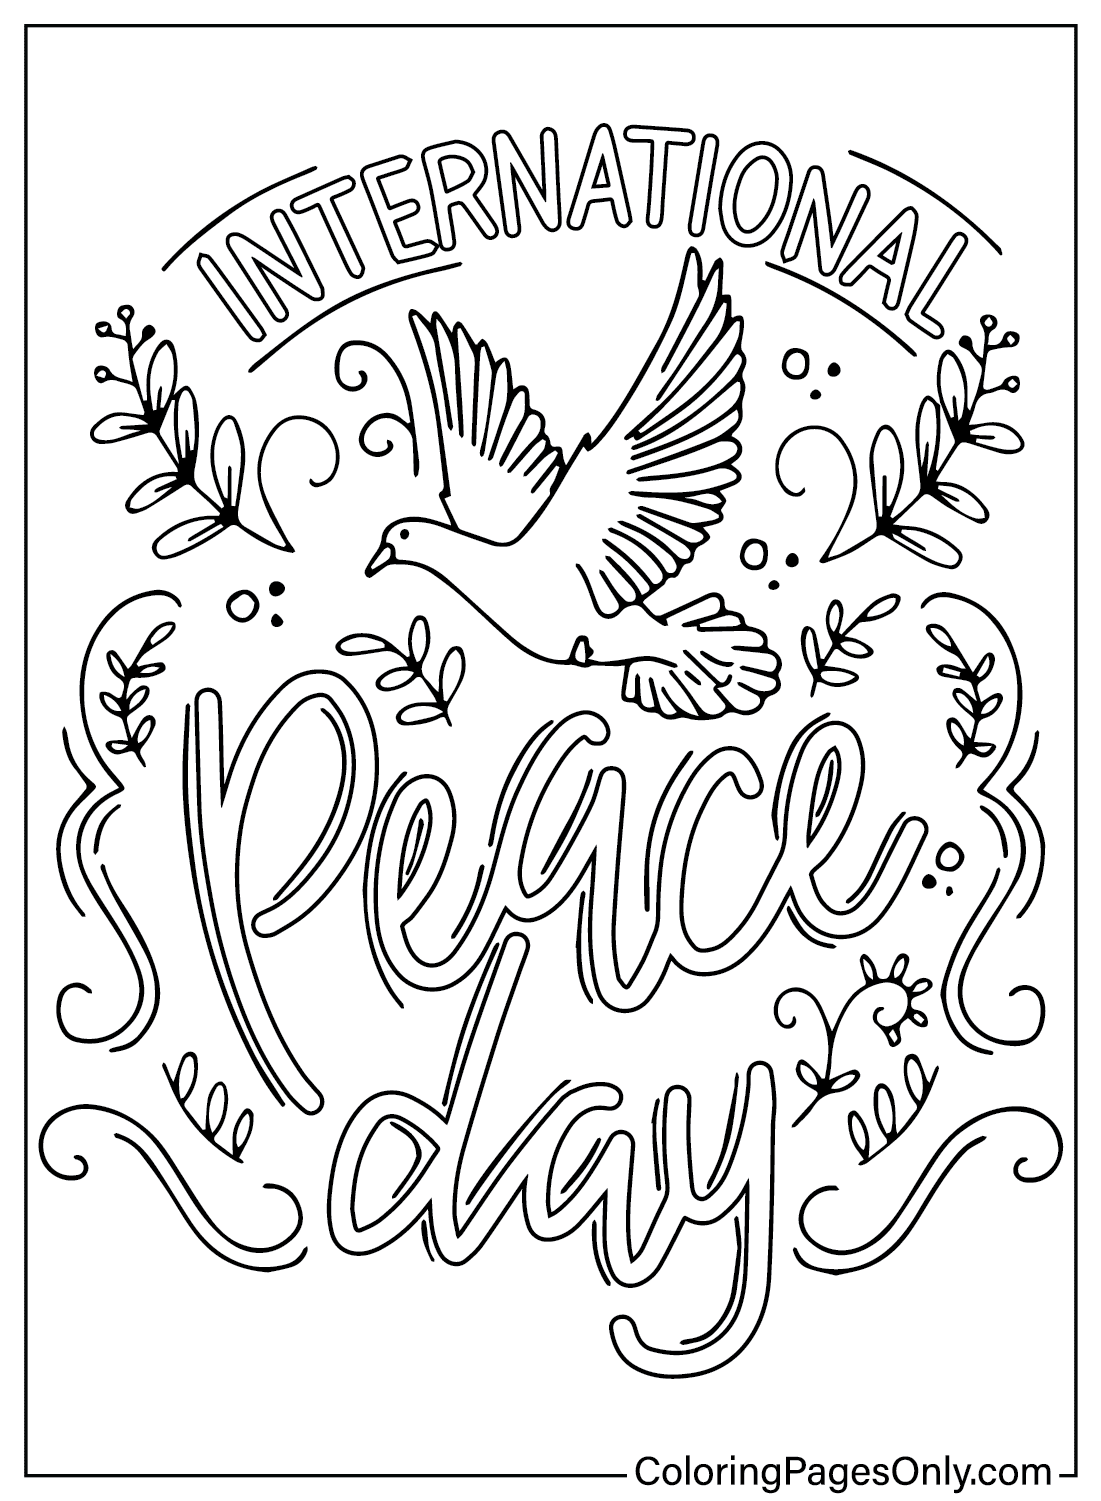 Página en color del Día Internacional de la Paz del Día Internacional de la Paz